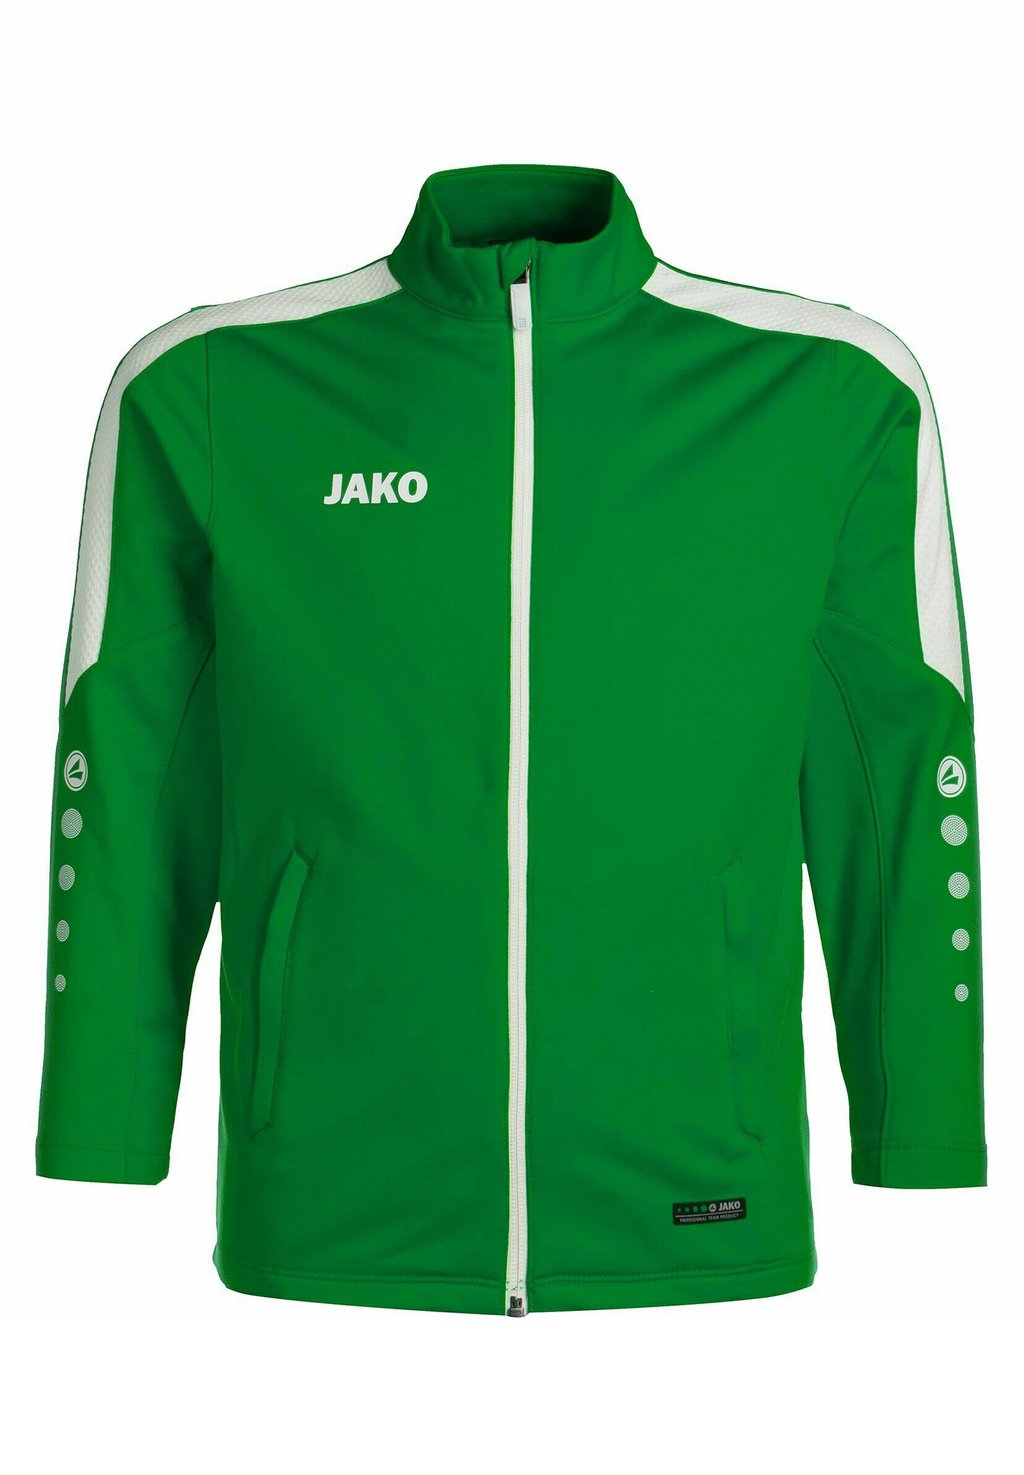 Спортивная куртка Power JAKO, цвет sportgrün